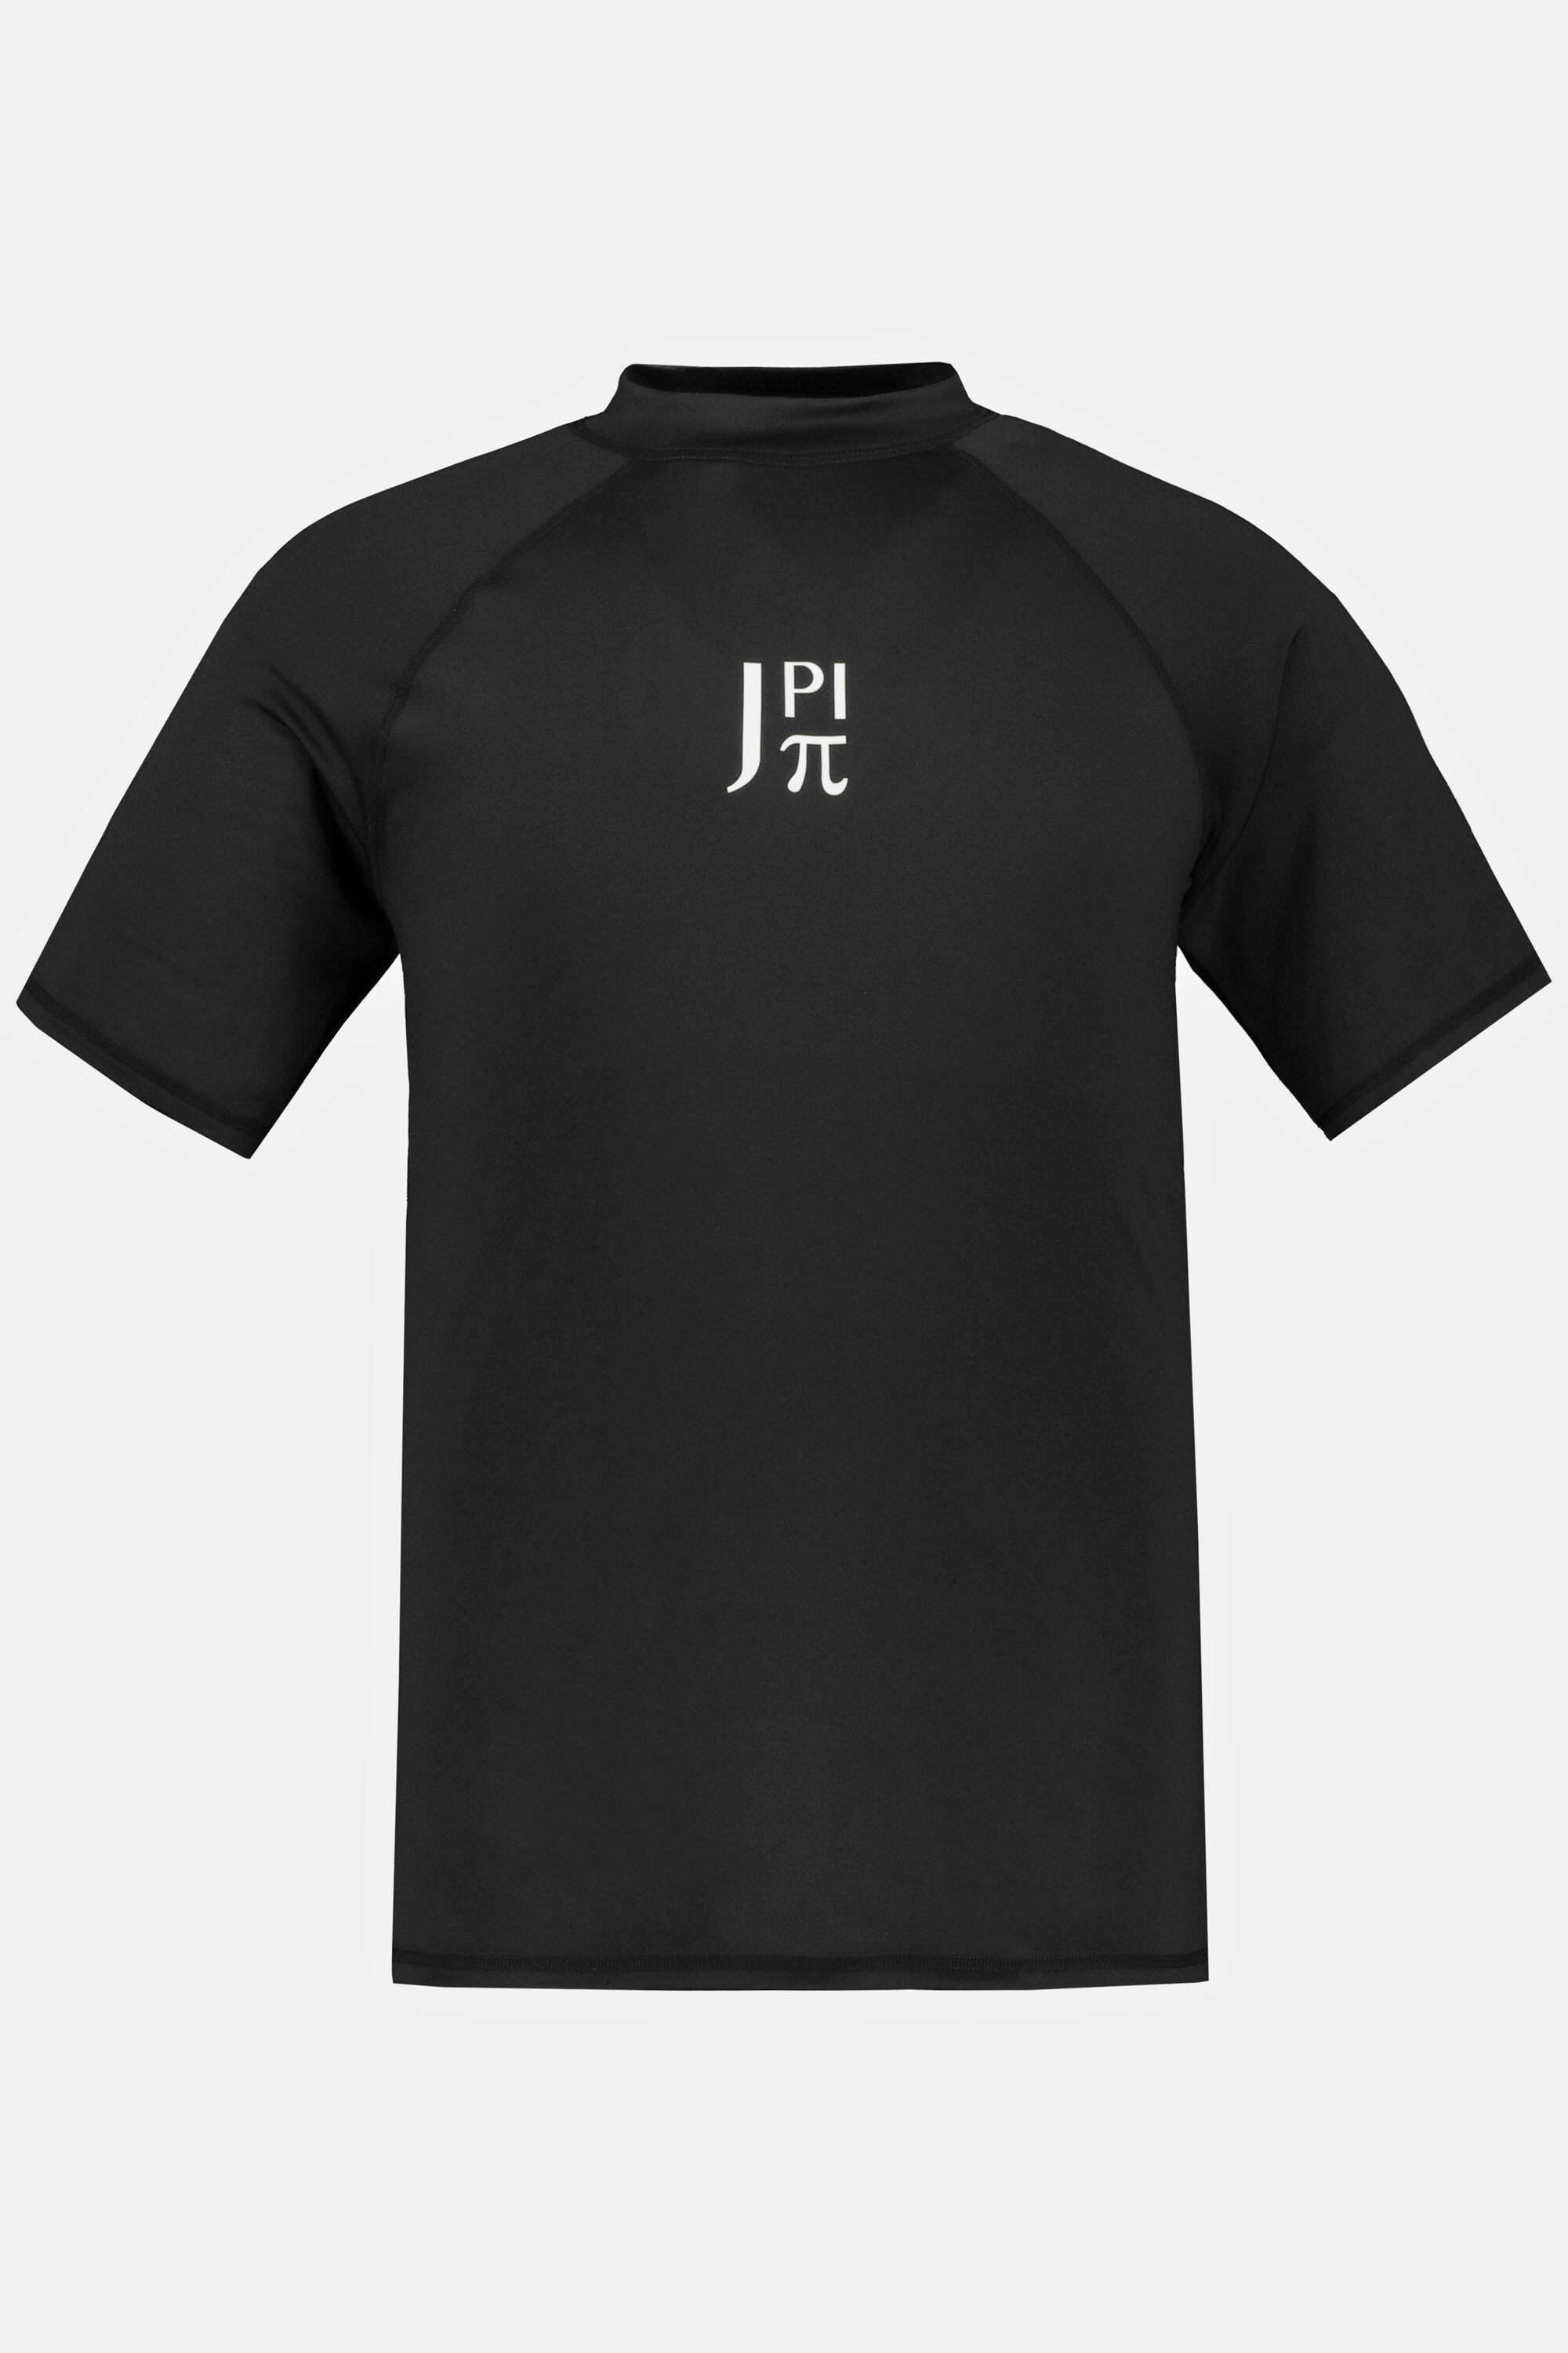 T-Shirt JP1880 UV-Schutz Halbarm schwarz Schwimmshirt Stehkragen